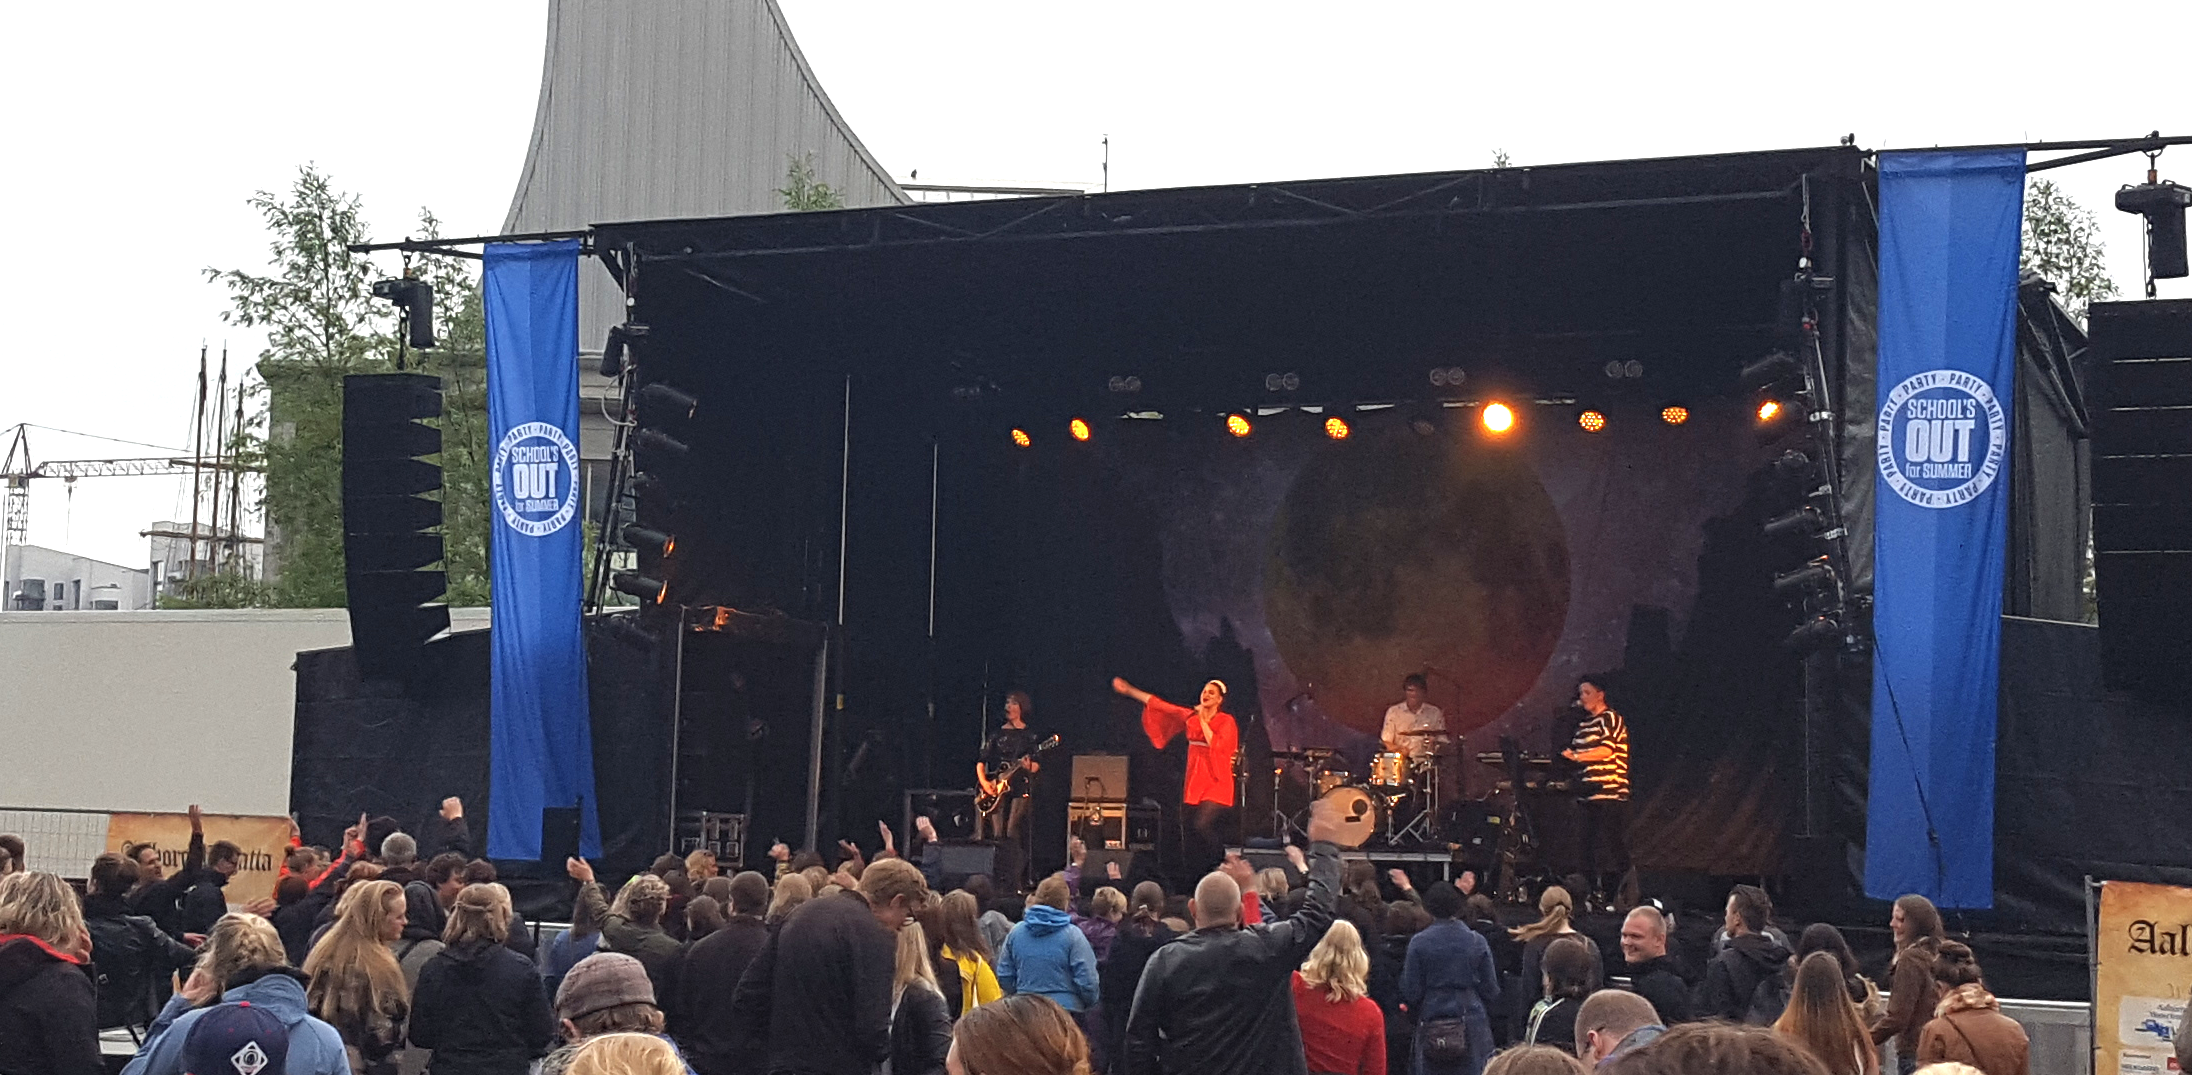 Sangerinden Fallulah gav koncert på havnefronten i Aalborg torsdag d. 16.06.2016 under fanenerne School´s Out som afholdes af Studenterhuset, Aalborg.